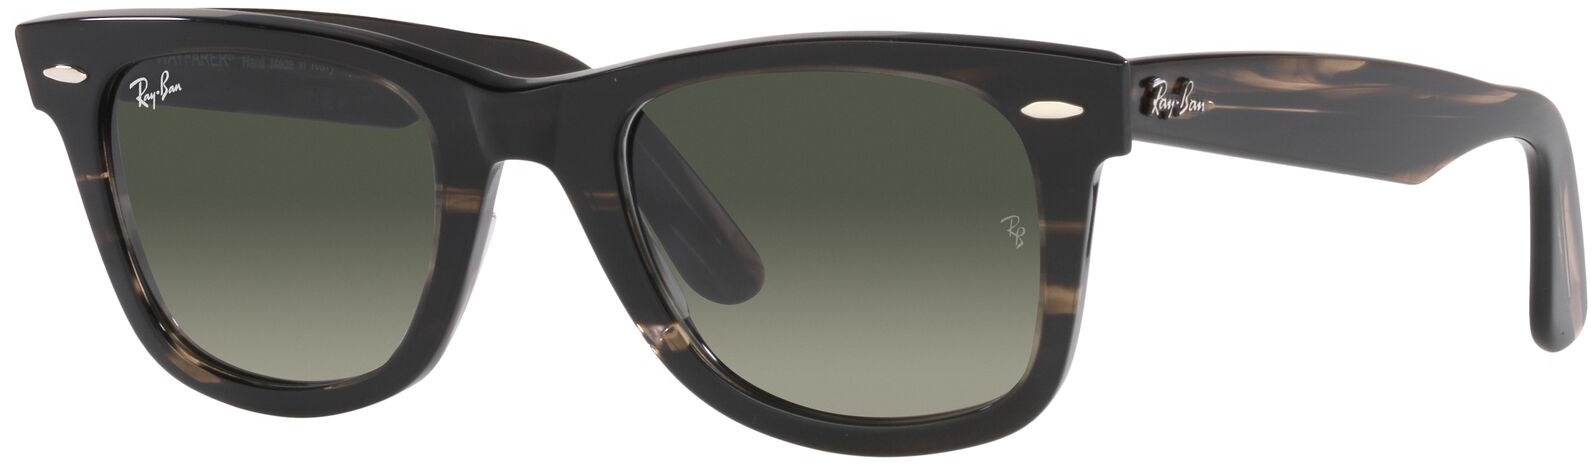 цена Оригинальные солнцезащитные очки Wayfarer из биоацетата Ray-Ban, серый